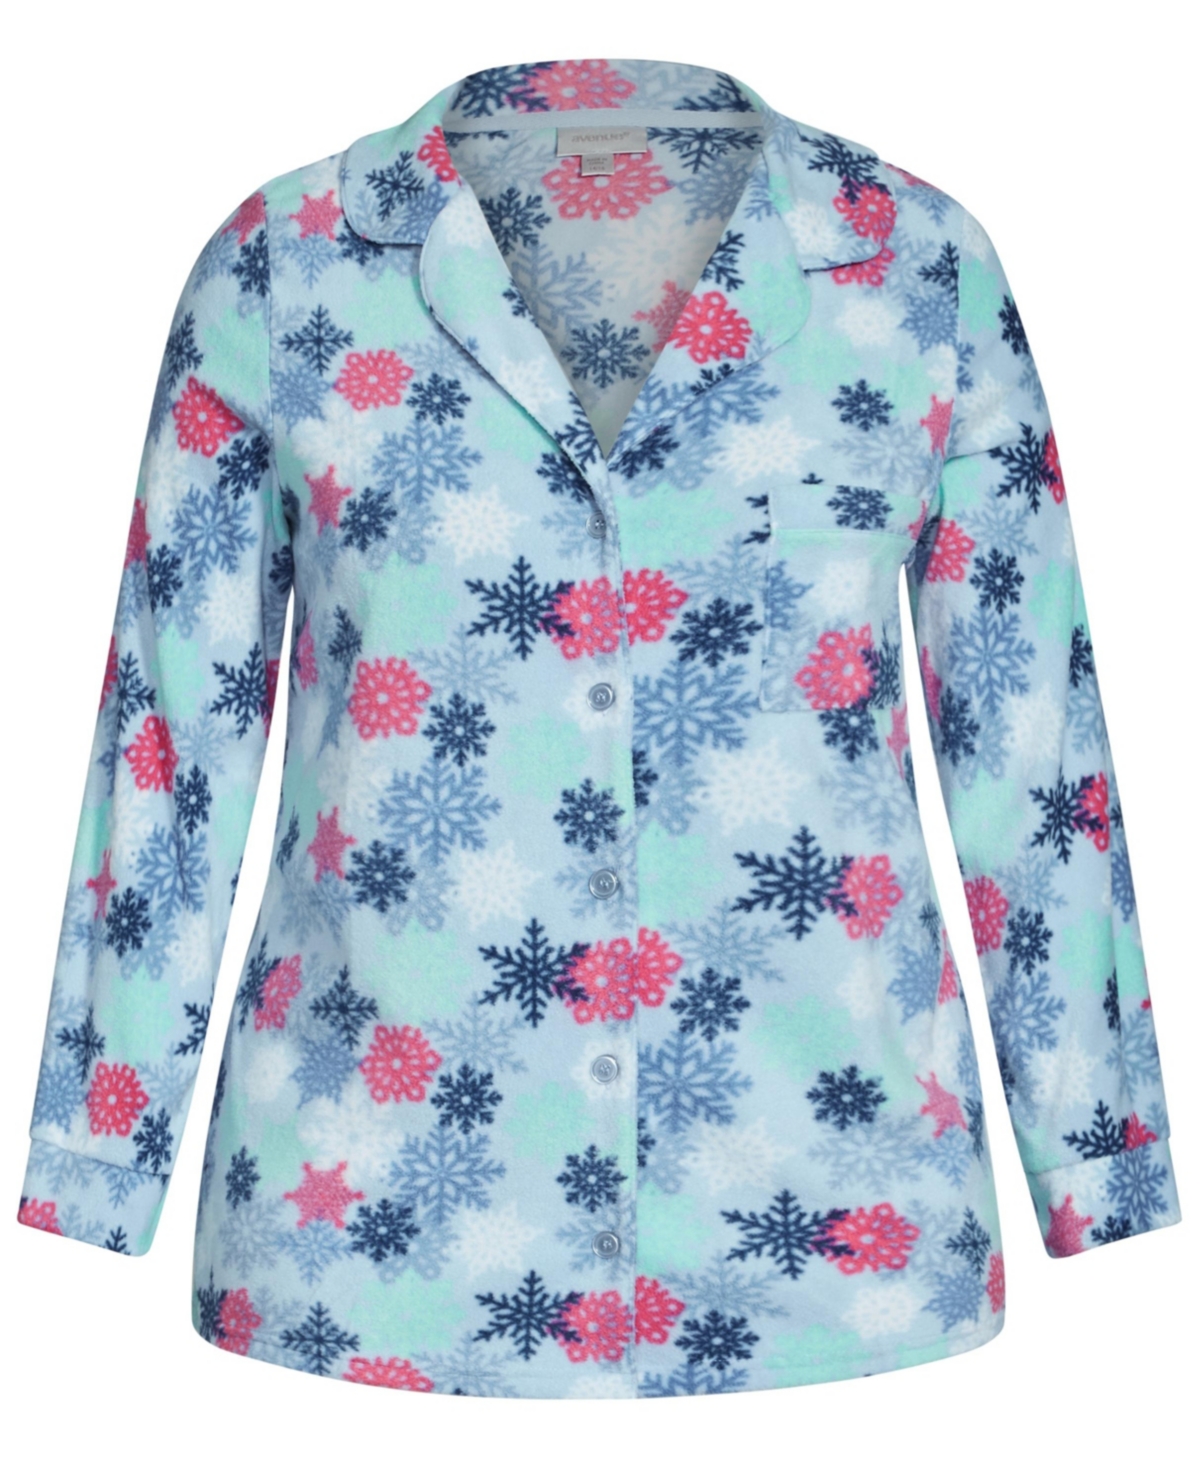 Plus Size Snowflake Button Fleece Sleep Top - Snowflake prt